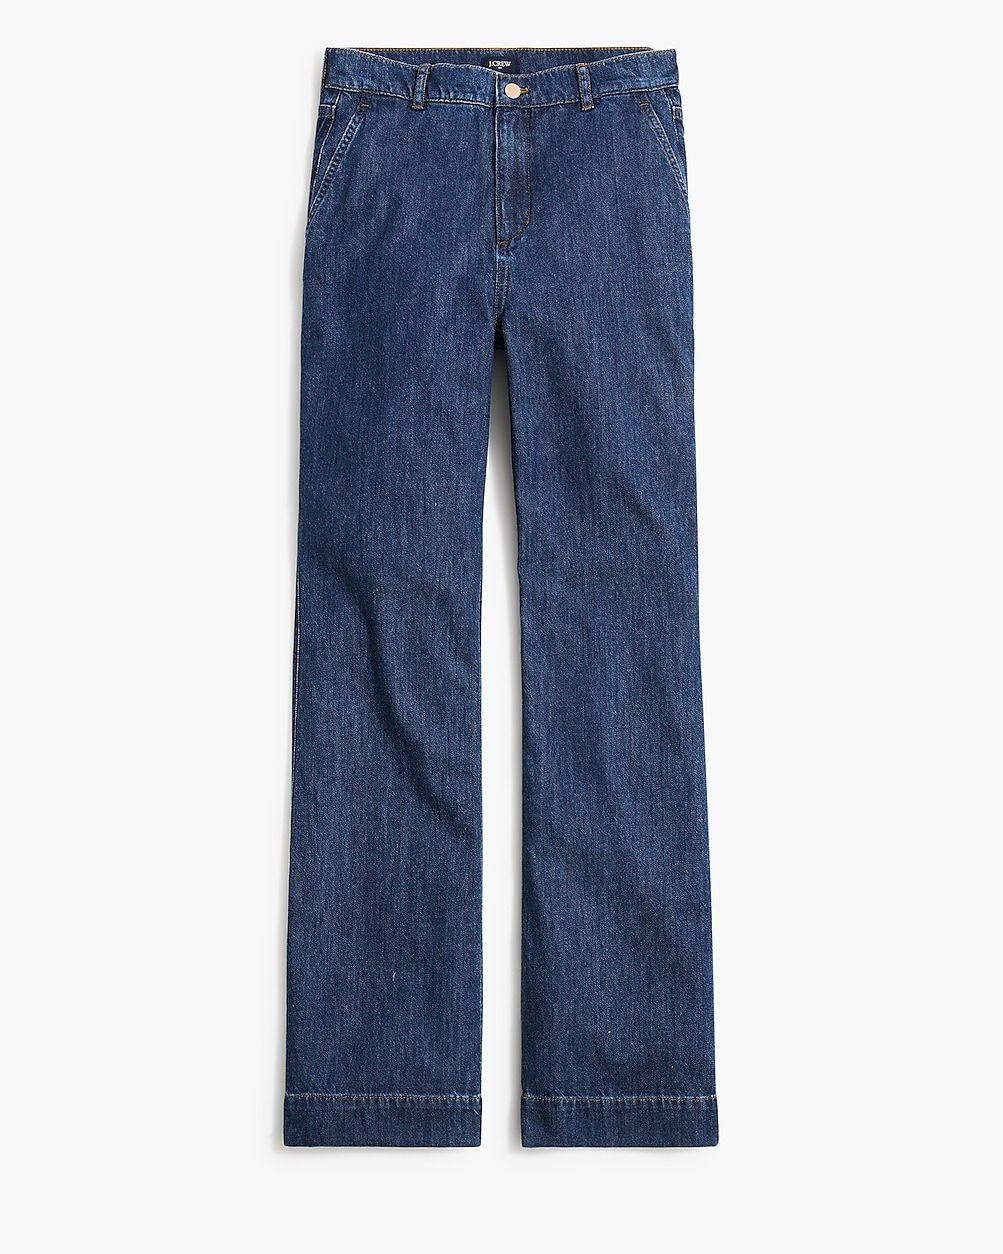 Denim trouser pant | J.Crew Factory